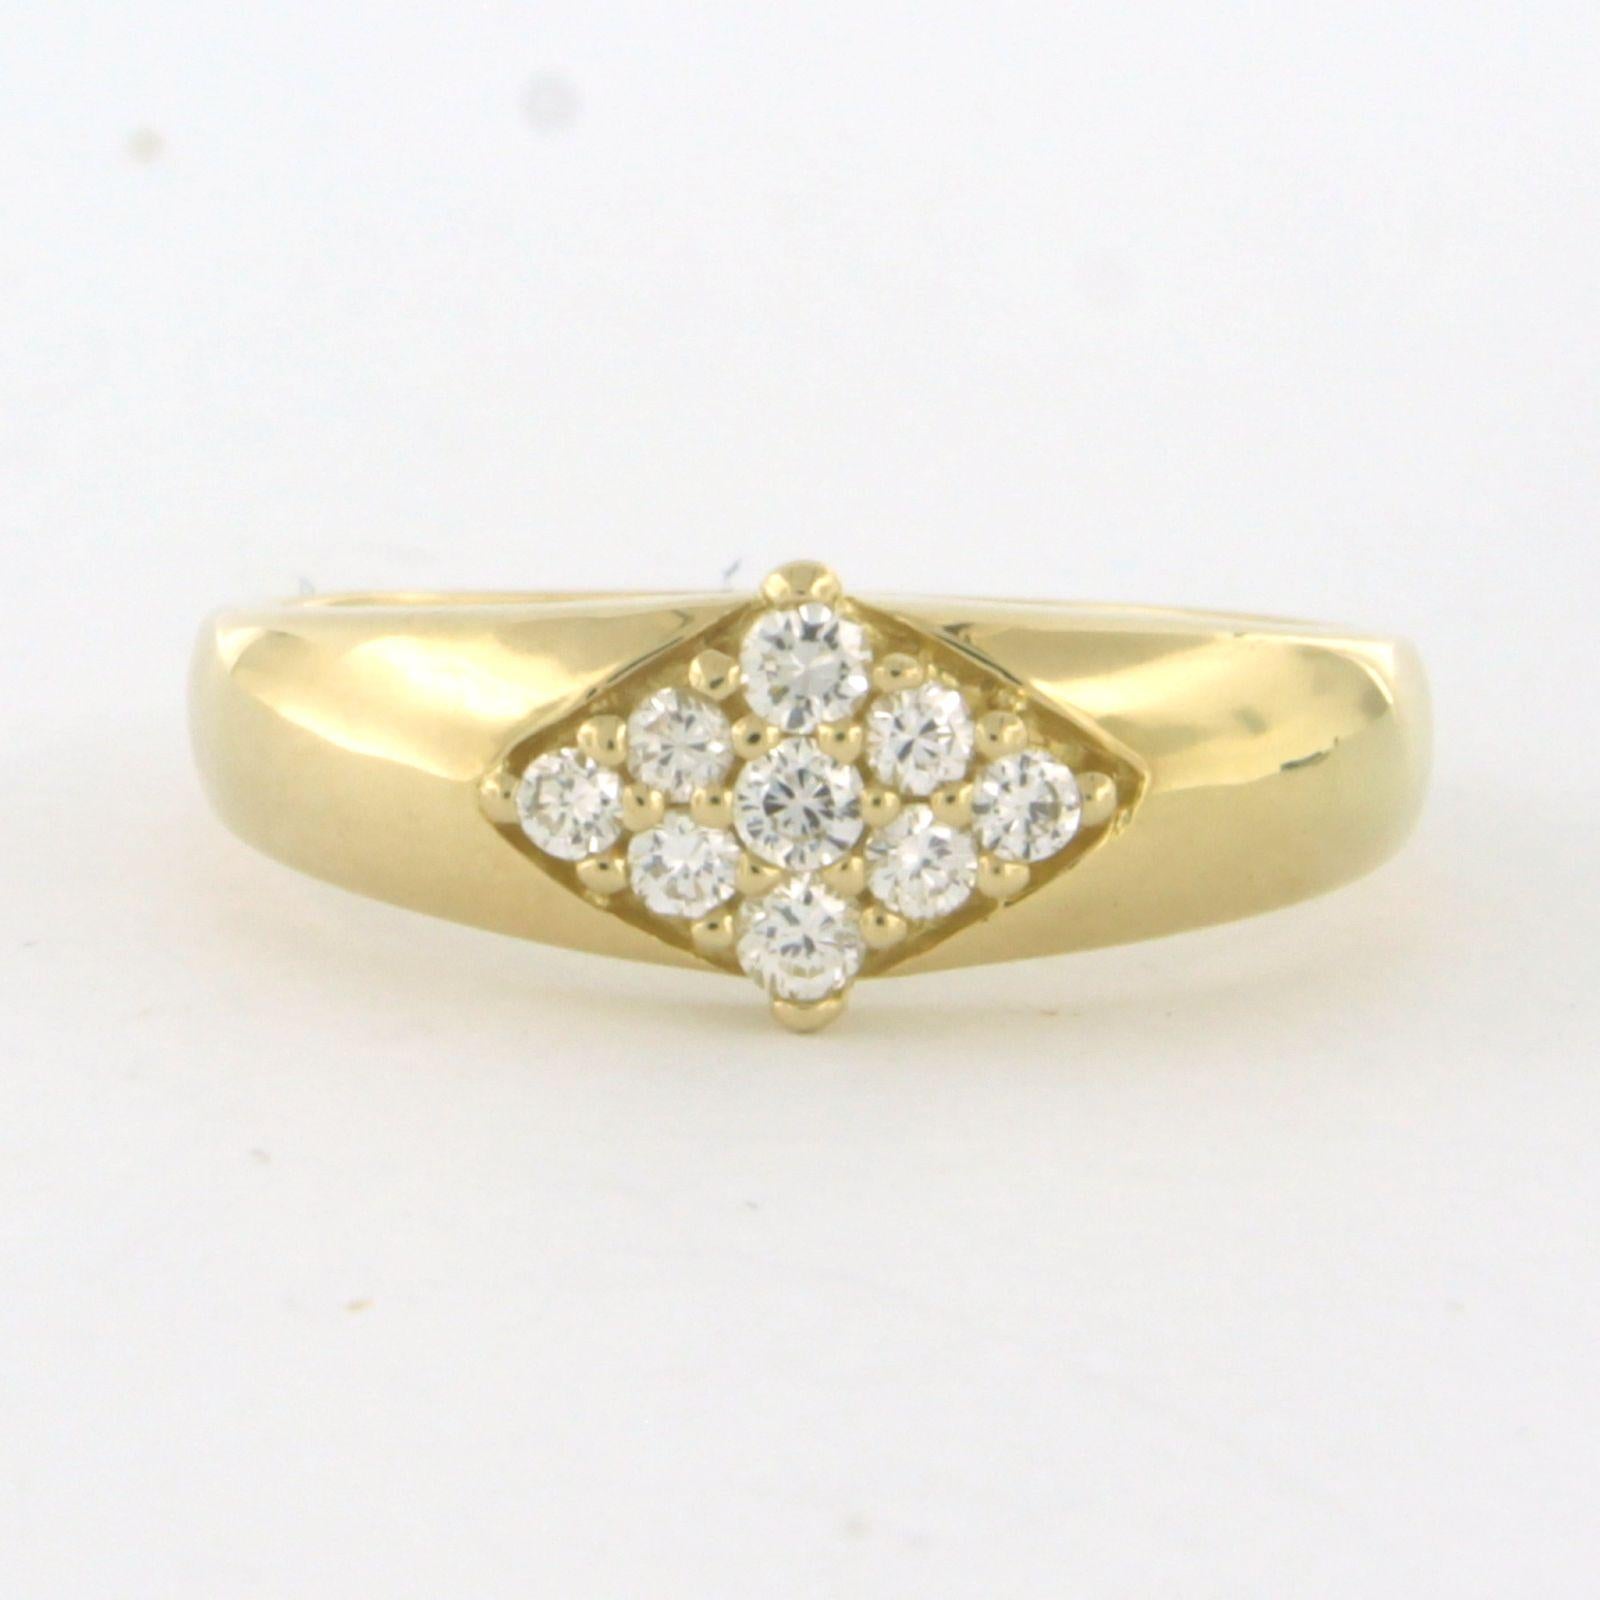 Bague en or jaune 18k sertie de diamants de taille brillant. 0.27ct - F/G - VS/SI - taille de bague U.S. 7.5 - EU. 17.75(56)

Description détaillée

le haut de l'anneau a une largeur de 7.5 mm

Bague de taille US 7.5 - EU. 17.75(56), la bague peut